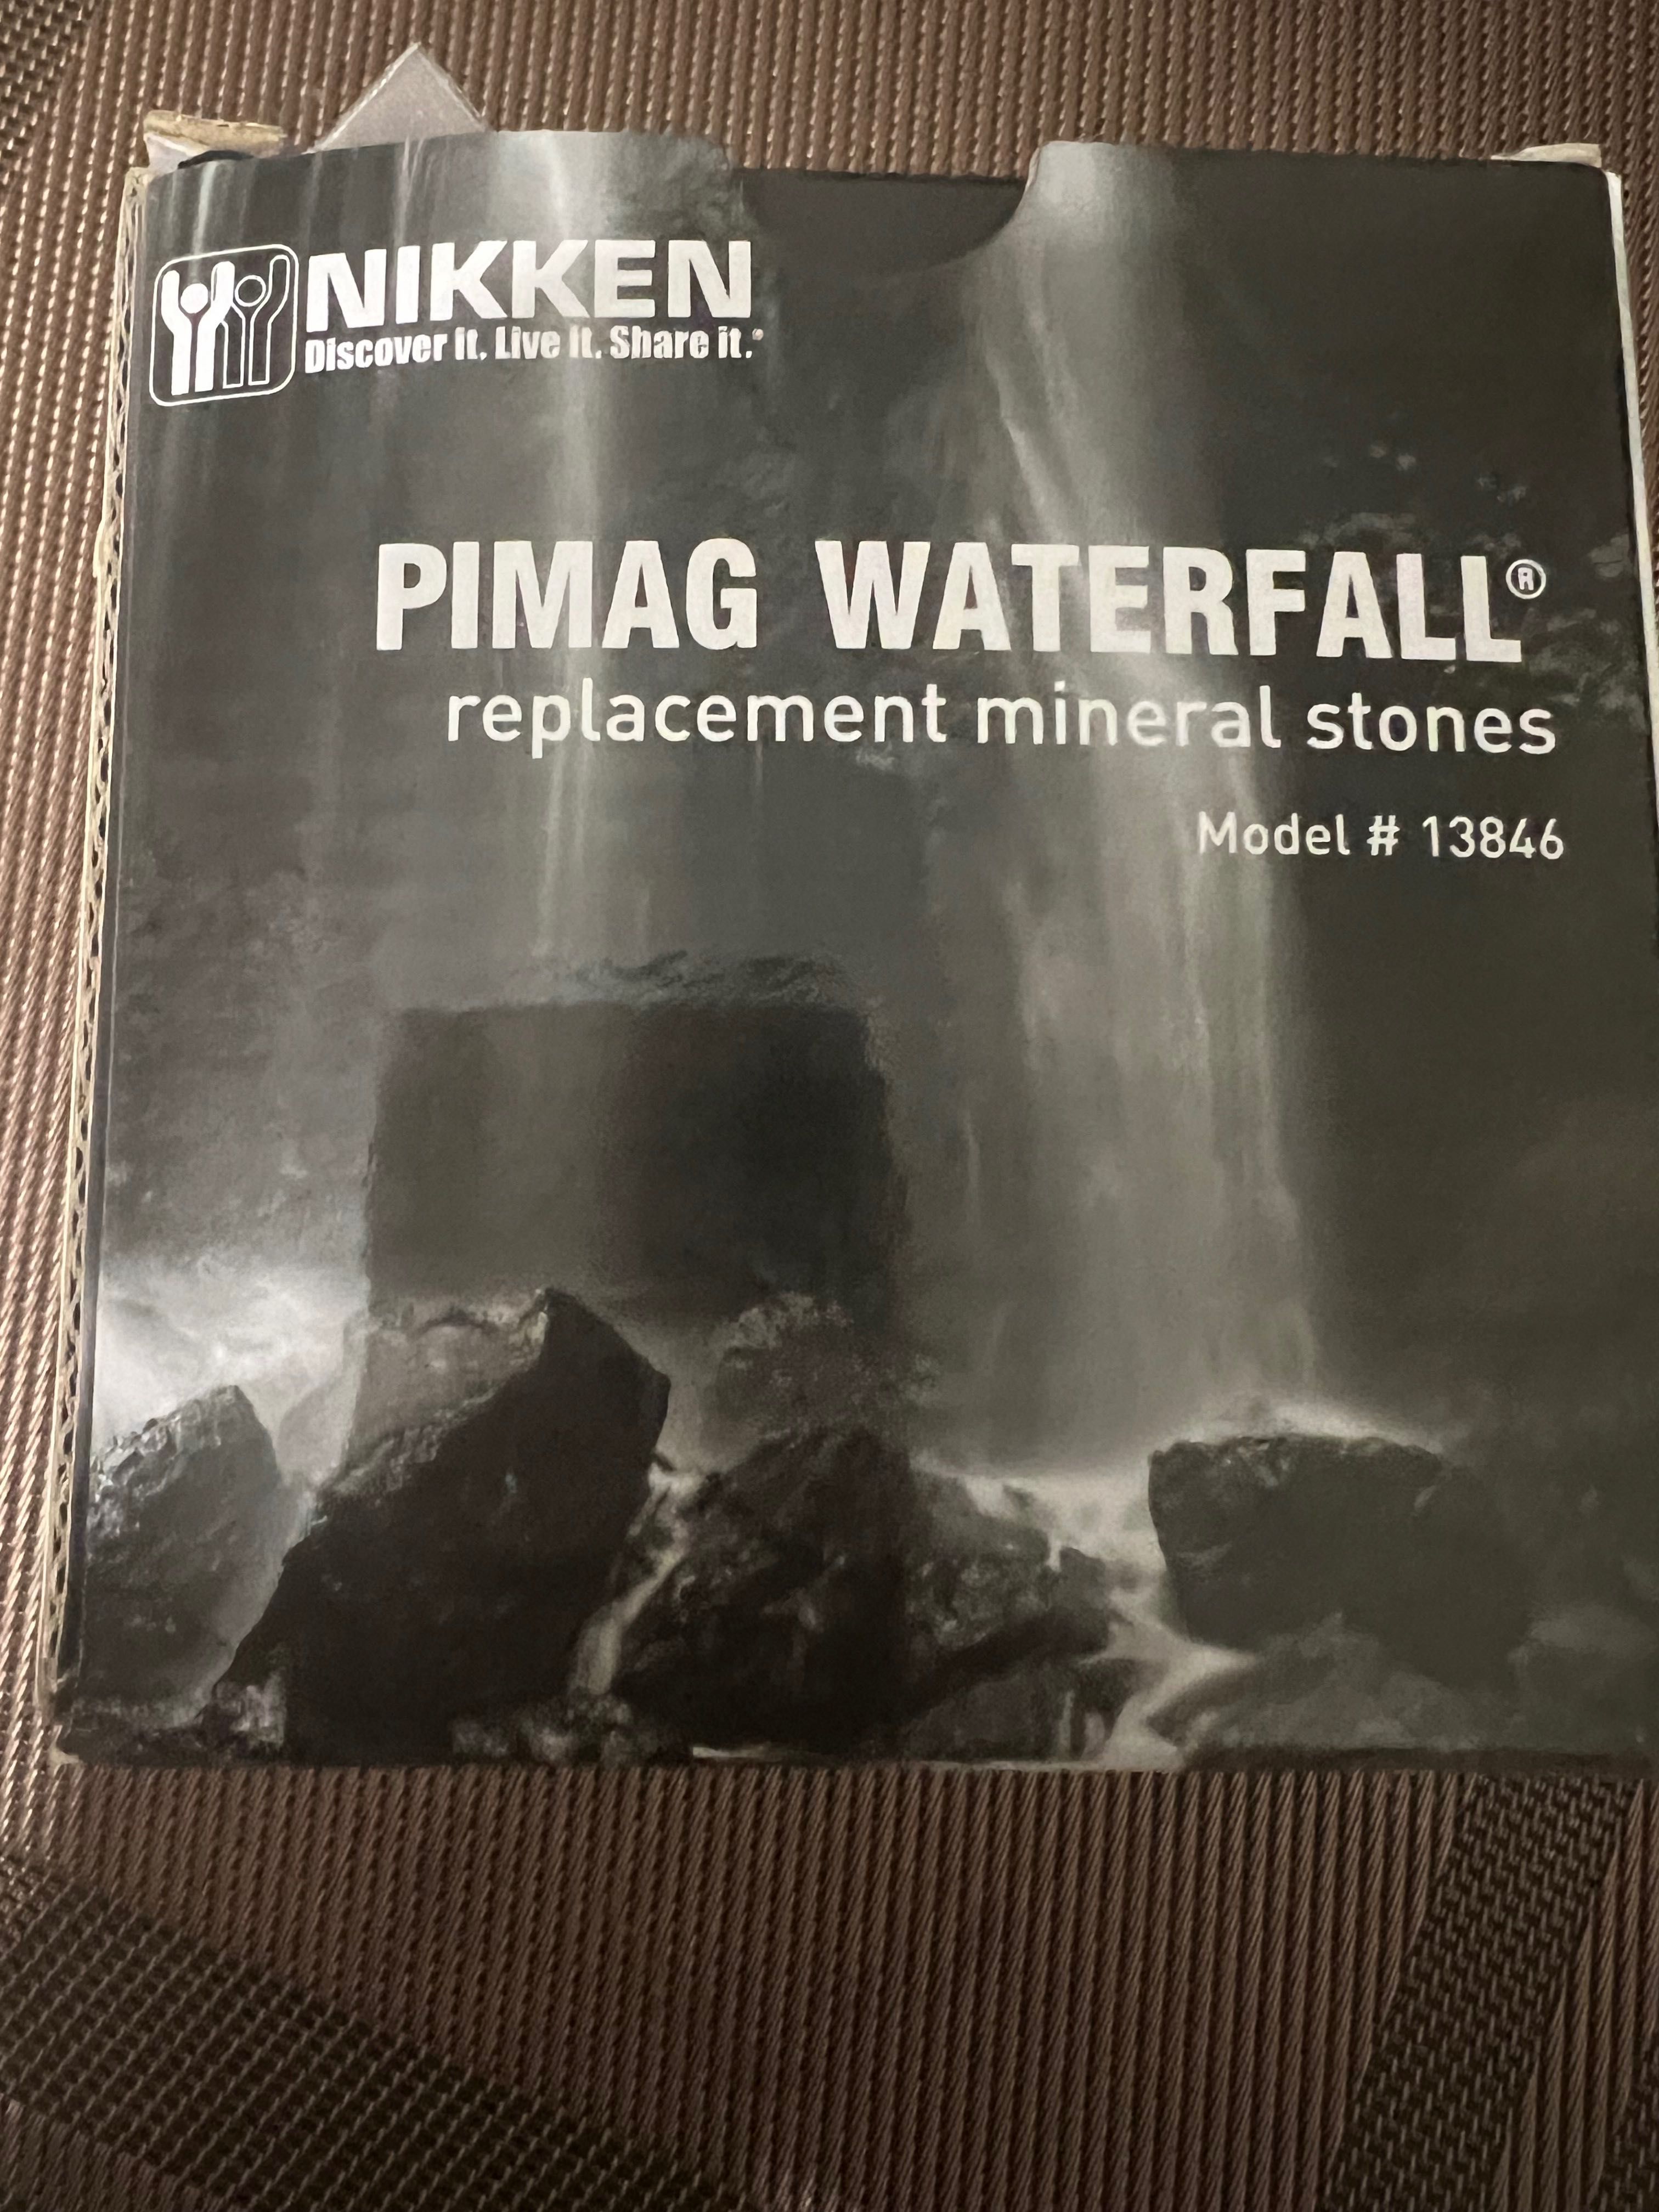 Vand filtre de apa si pietricele minerale PiMag de la Nikken